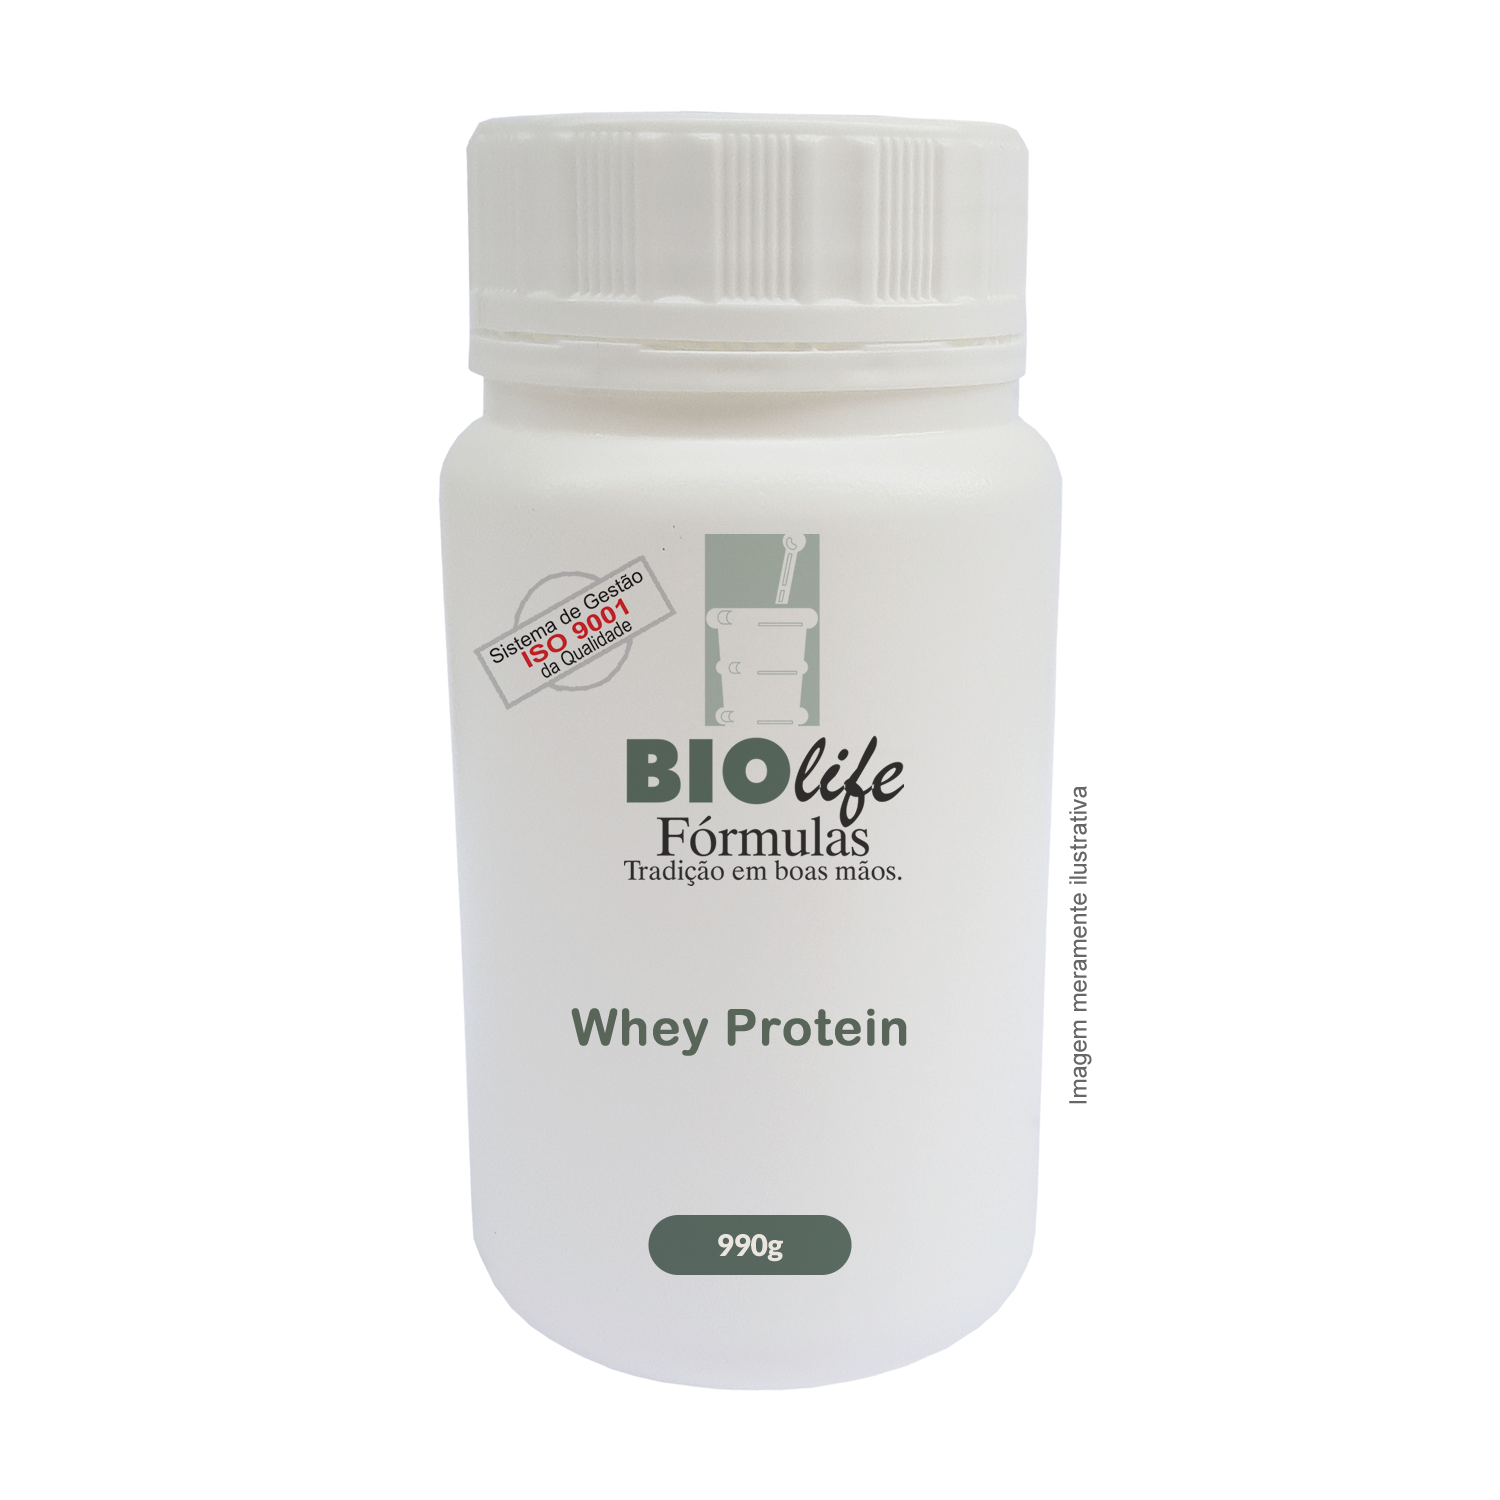 Whey protein 990g  - Proteína concentrada do soro do Leite - BioLife